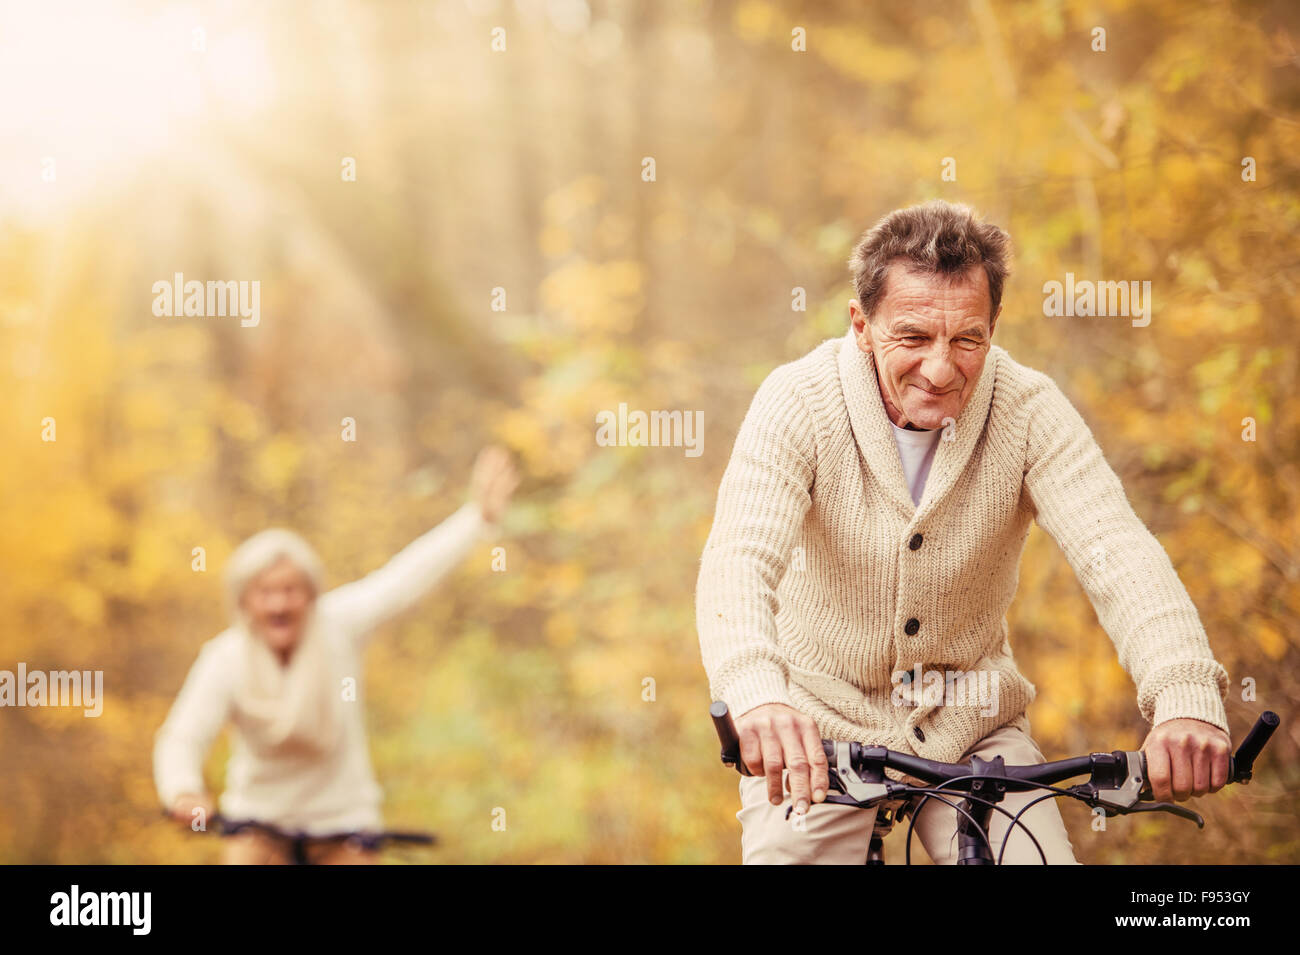 Active los ancianos dando un agradable paseo en bicicleta en el otoño de la naturaleza. Ellos divertirse al aire libre. Foto de stock